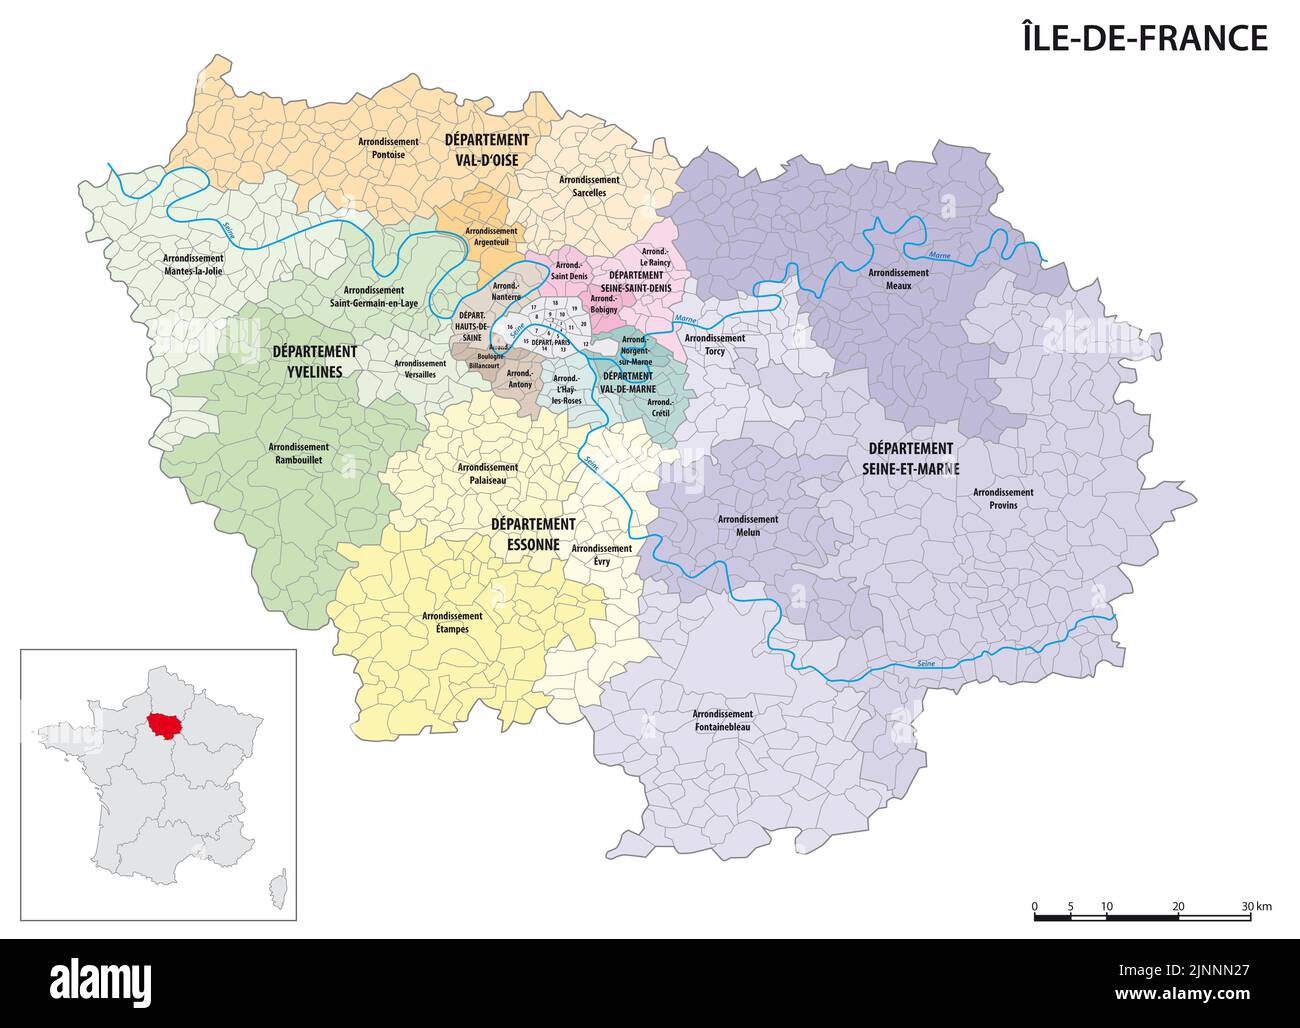 Detaillierte Verwaltungskarte der Region Ile-de-France, Frankreich Stockfoto